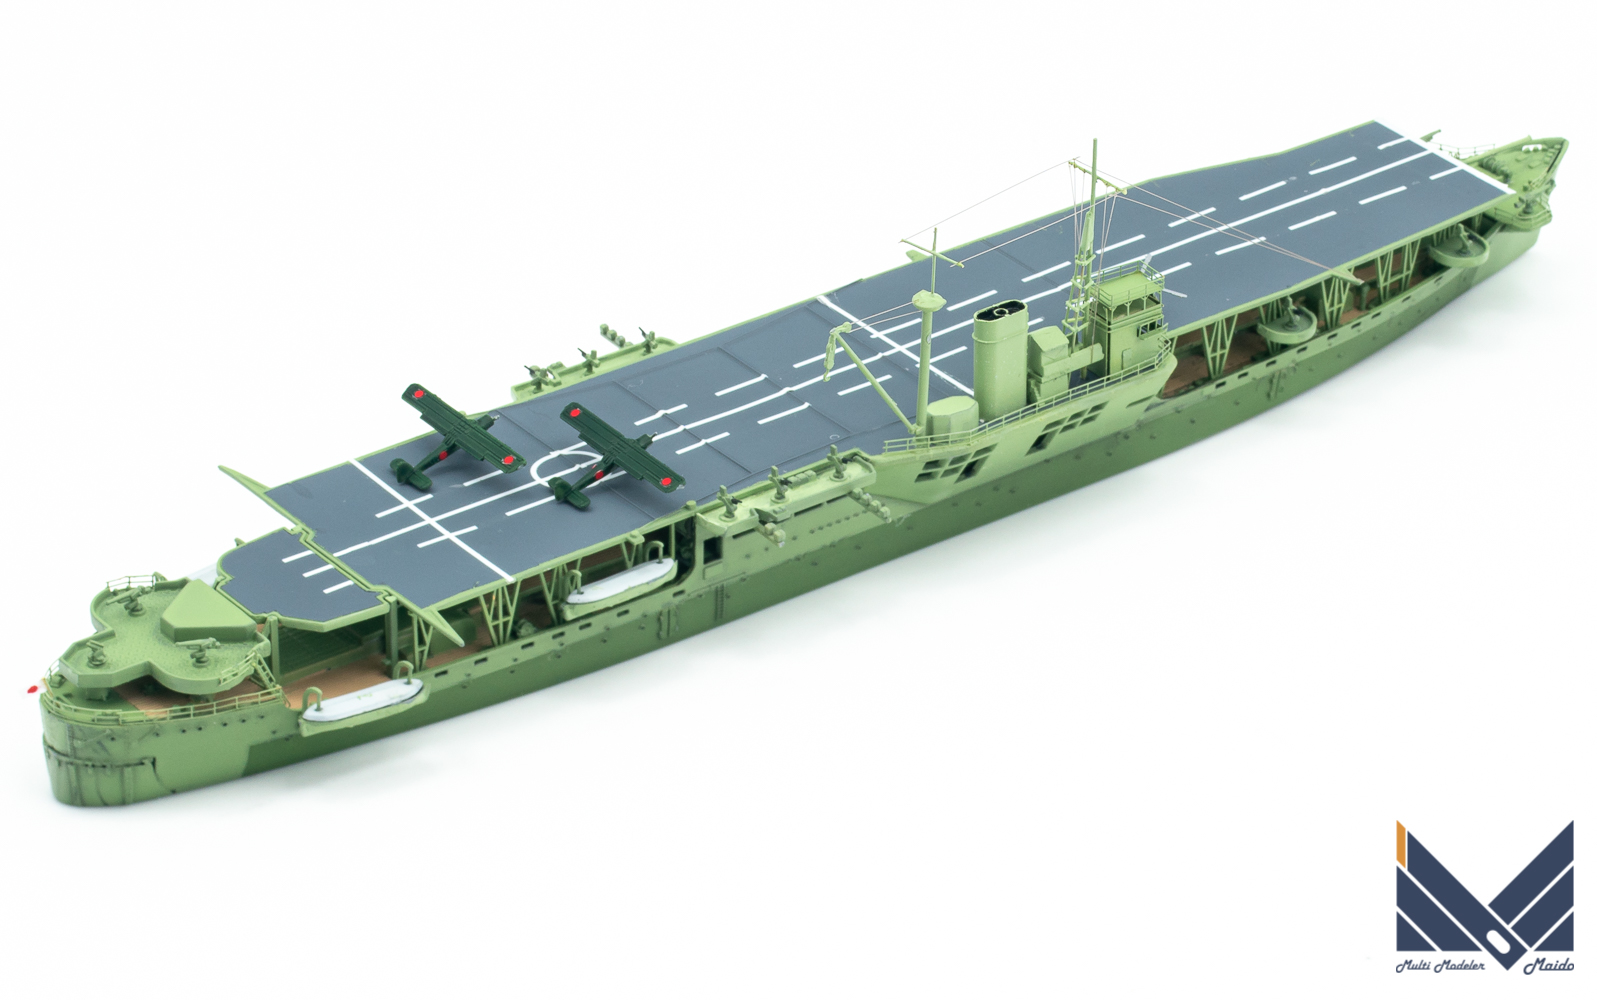 アオシマ 1/700 日本陸軍丙型特種船 あきつ丸 後期型完成品 Akitsumaru